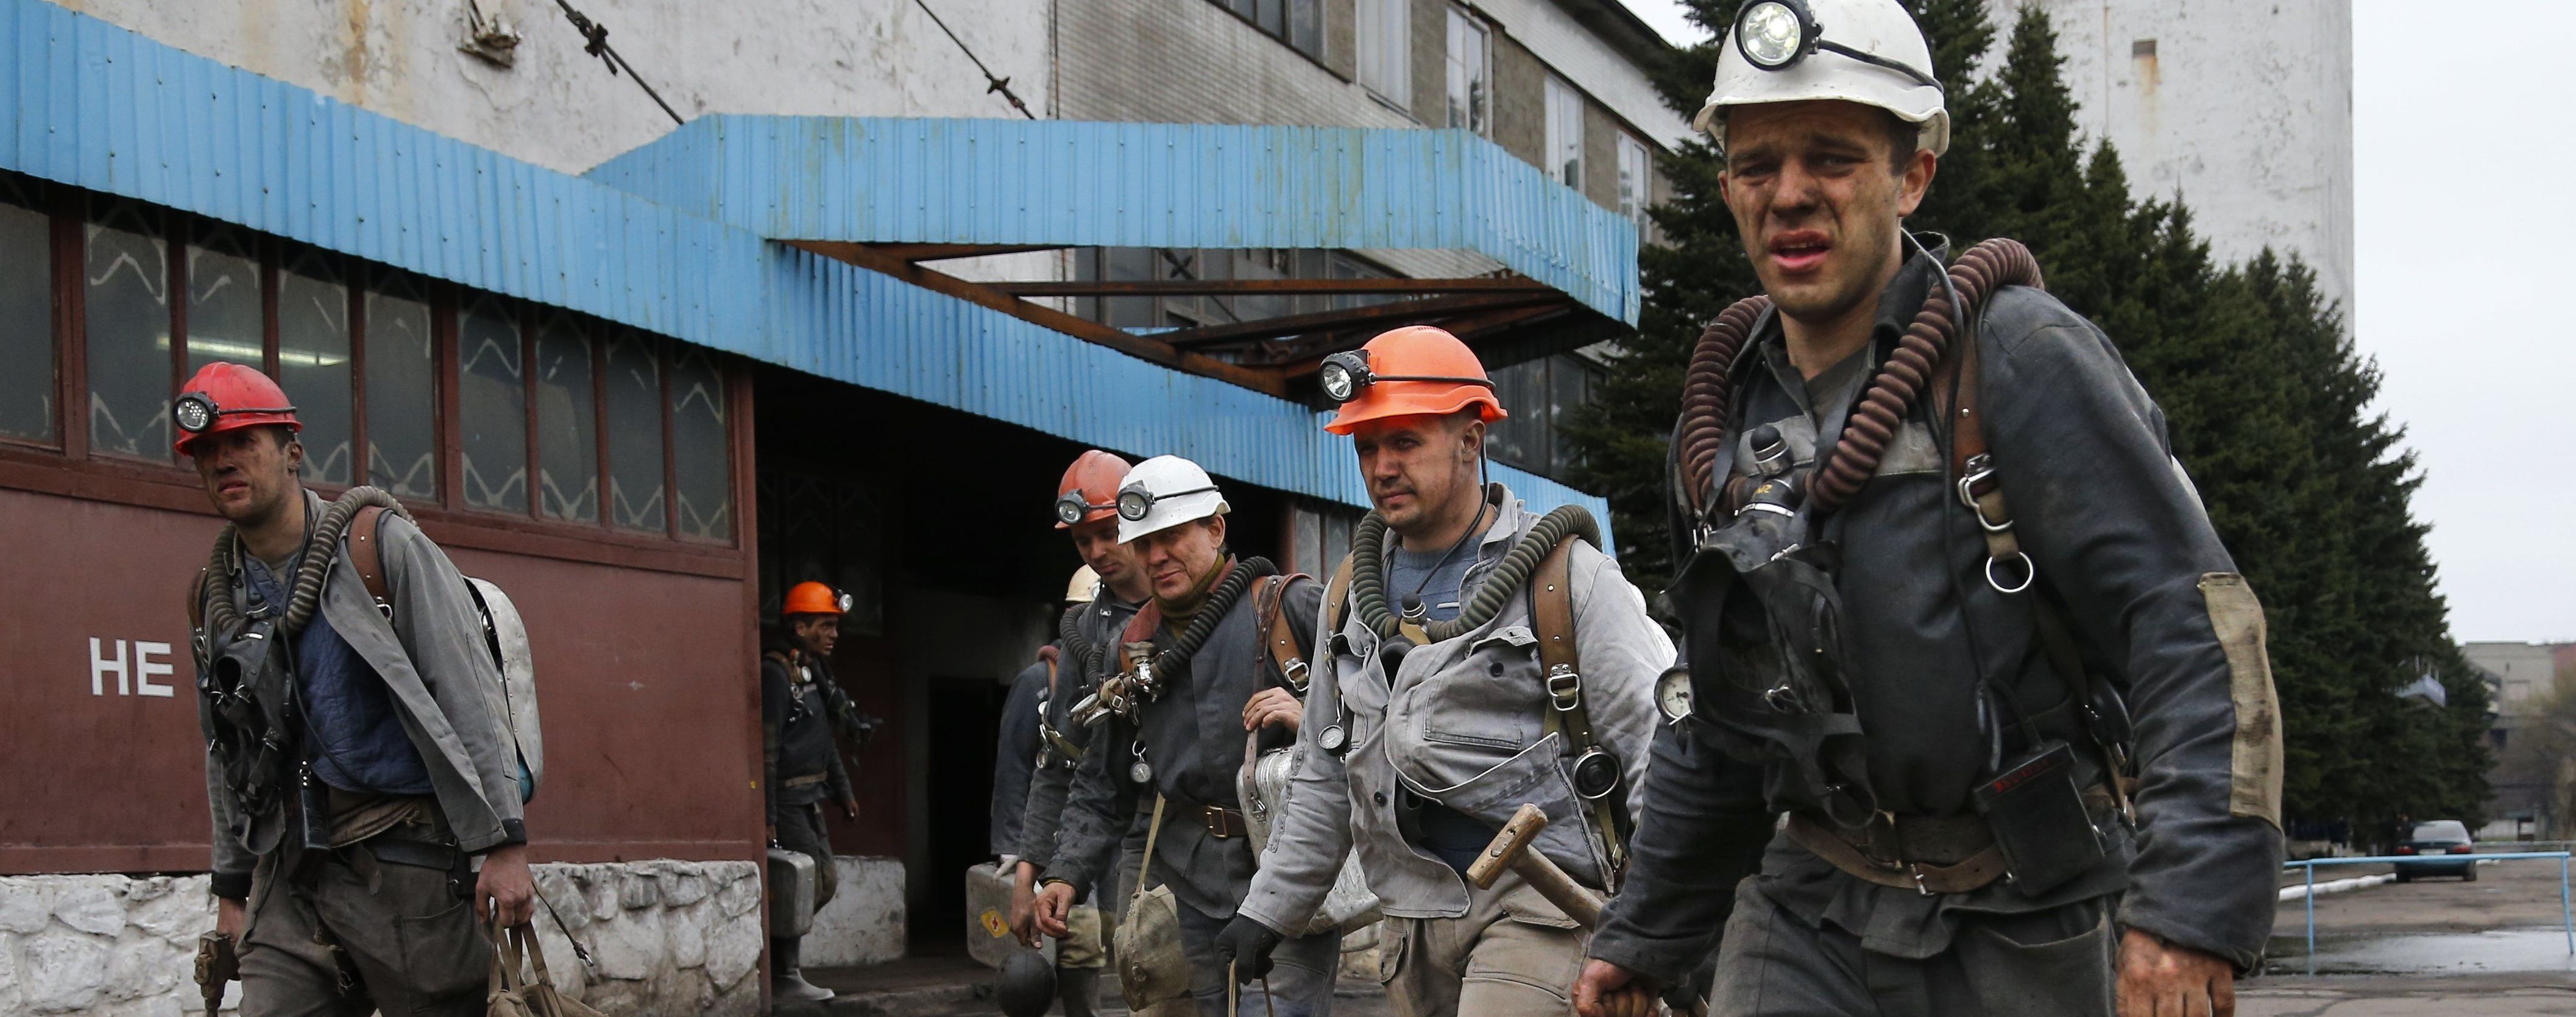 На этой неделе ожидаются митинги шахтеров, спланированные в ДТЭК Ахметова - Герус